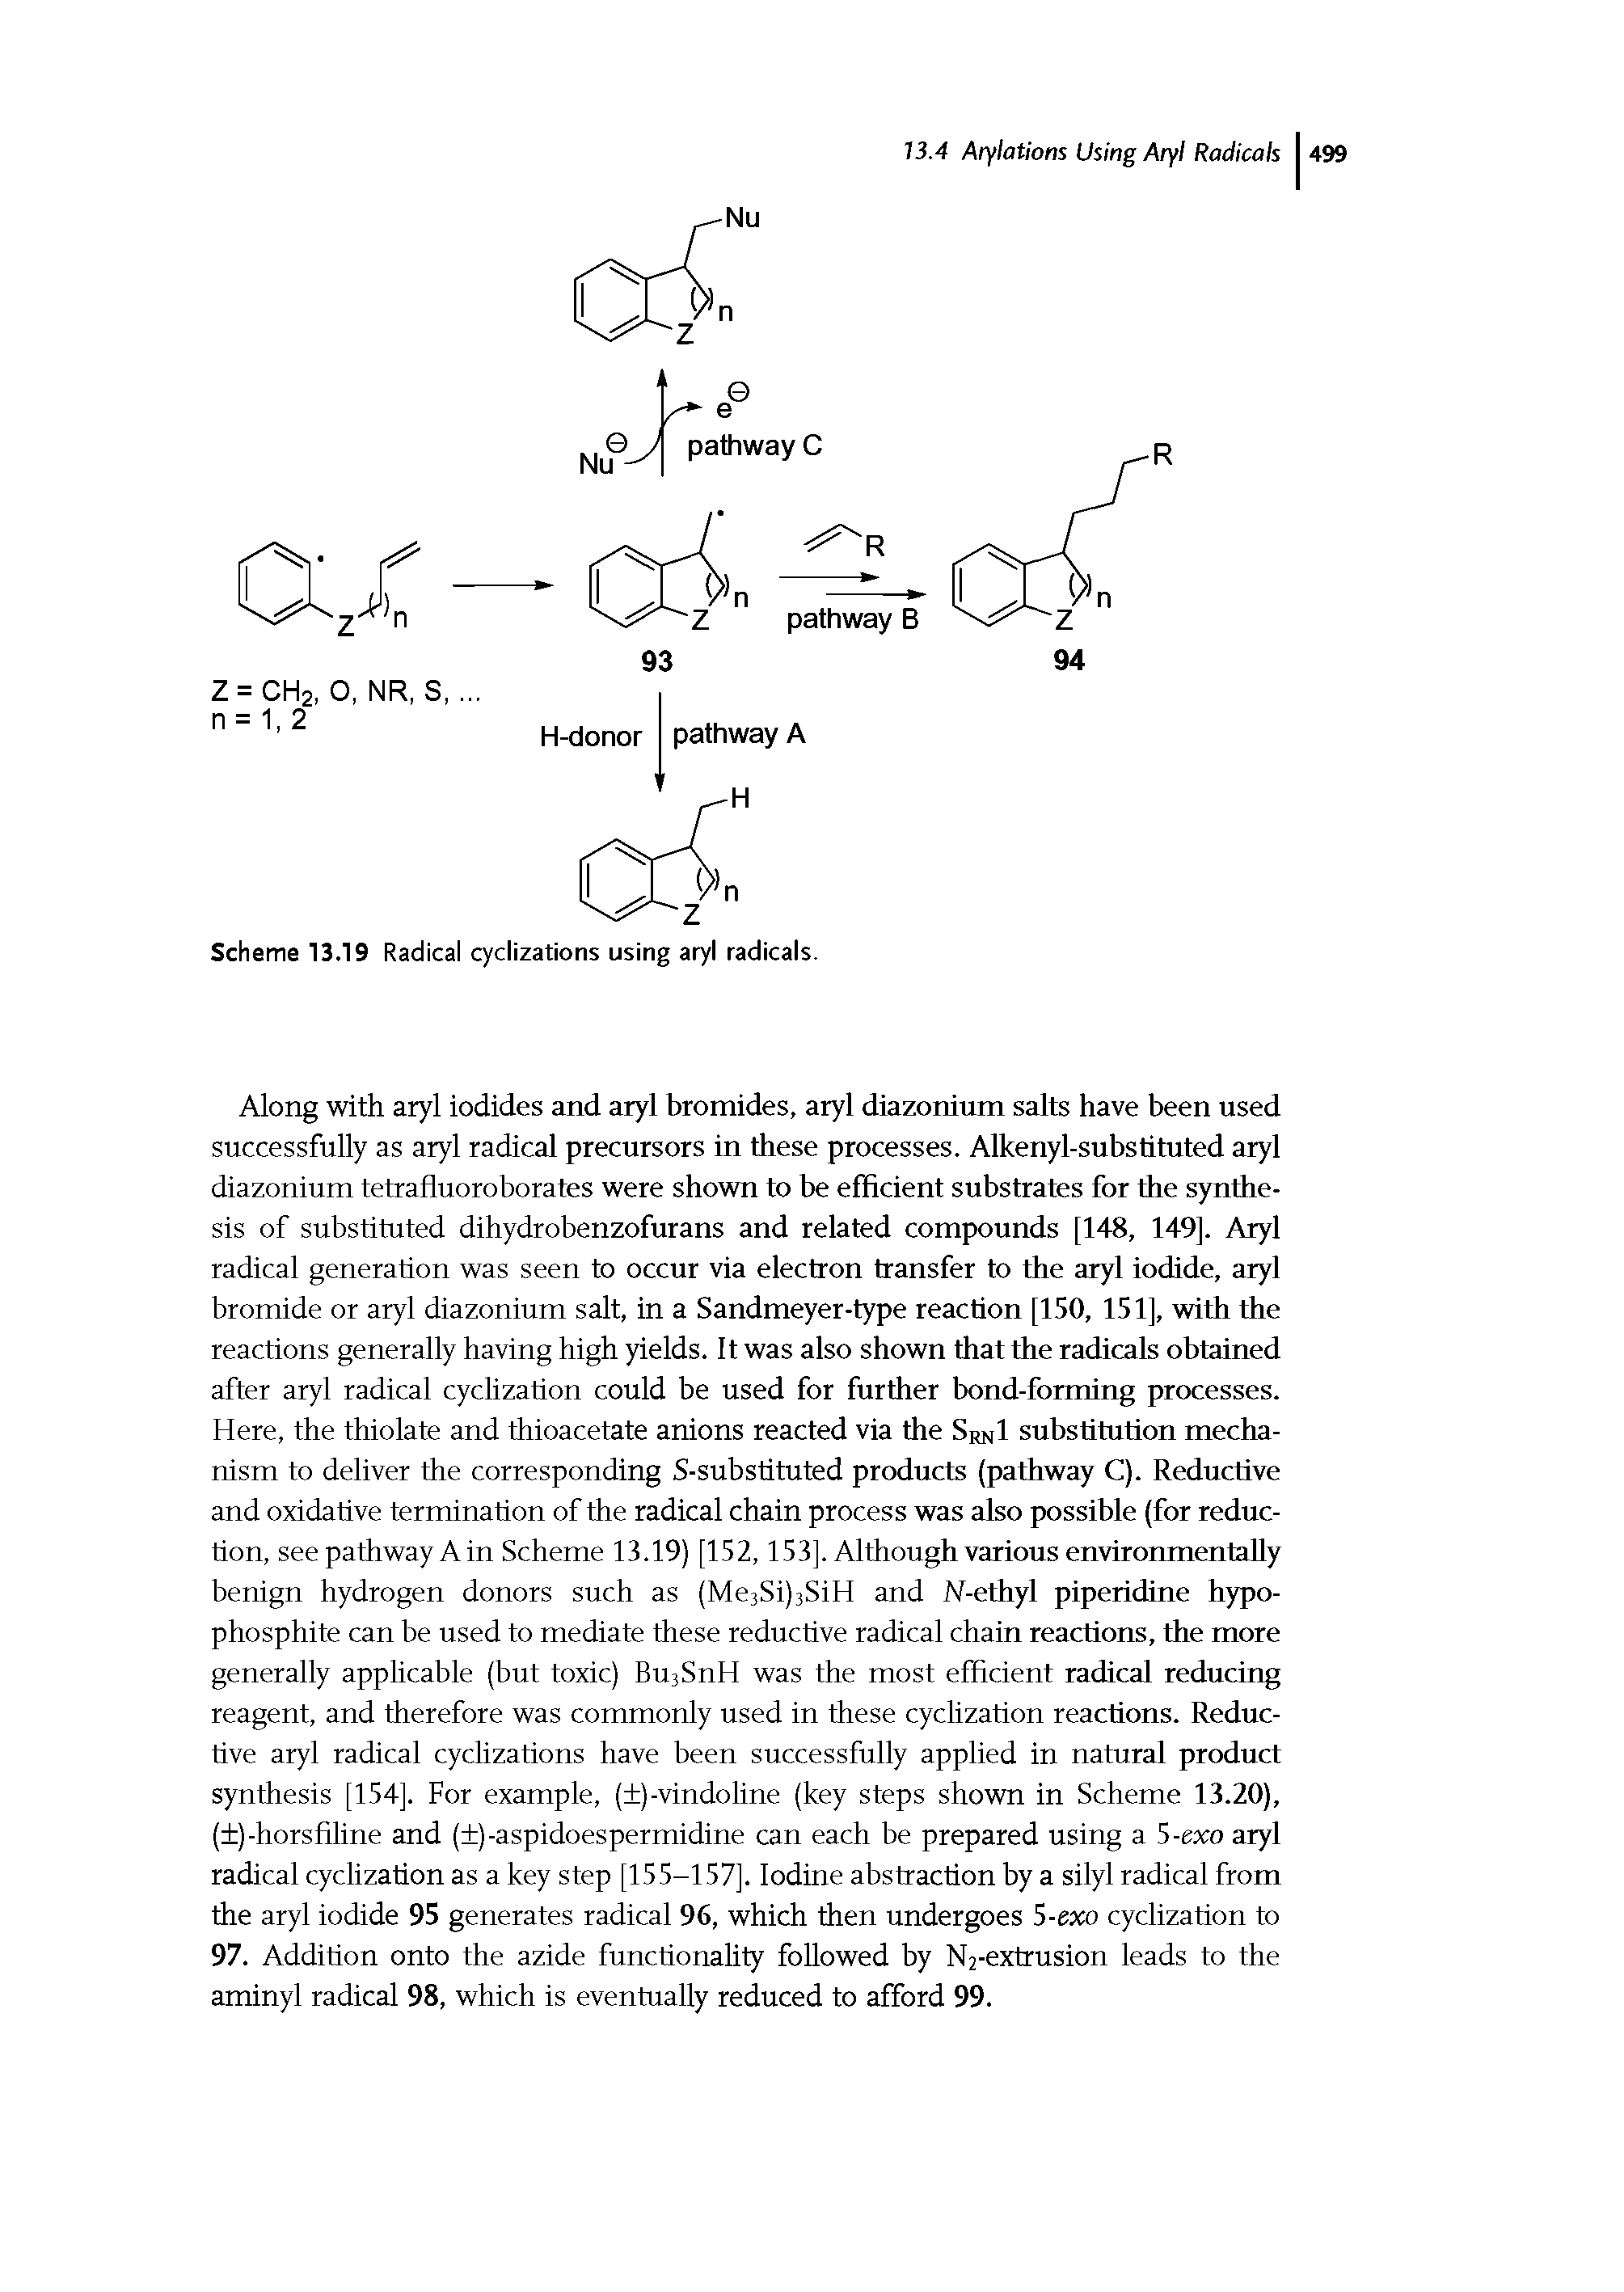 Scheme 13.19 Radical cyclizations using aryl radicals.